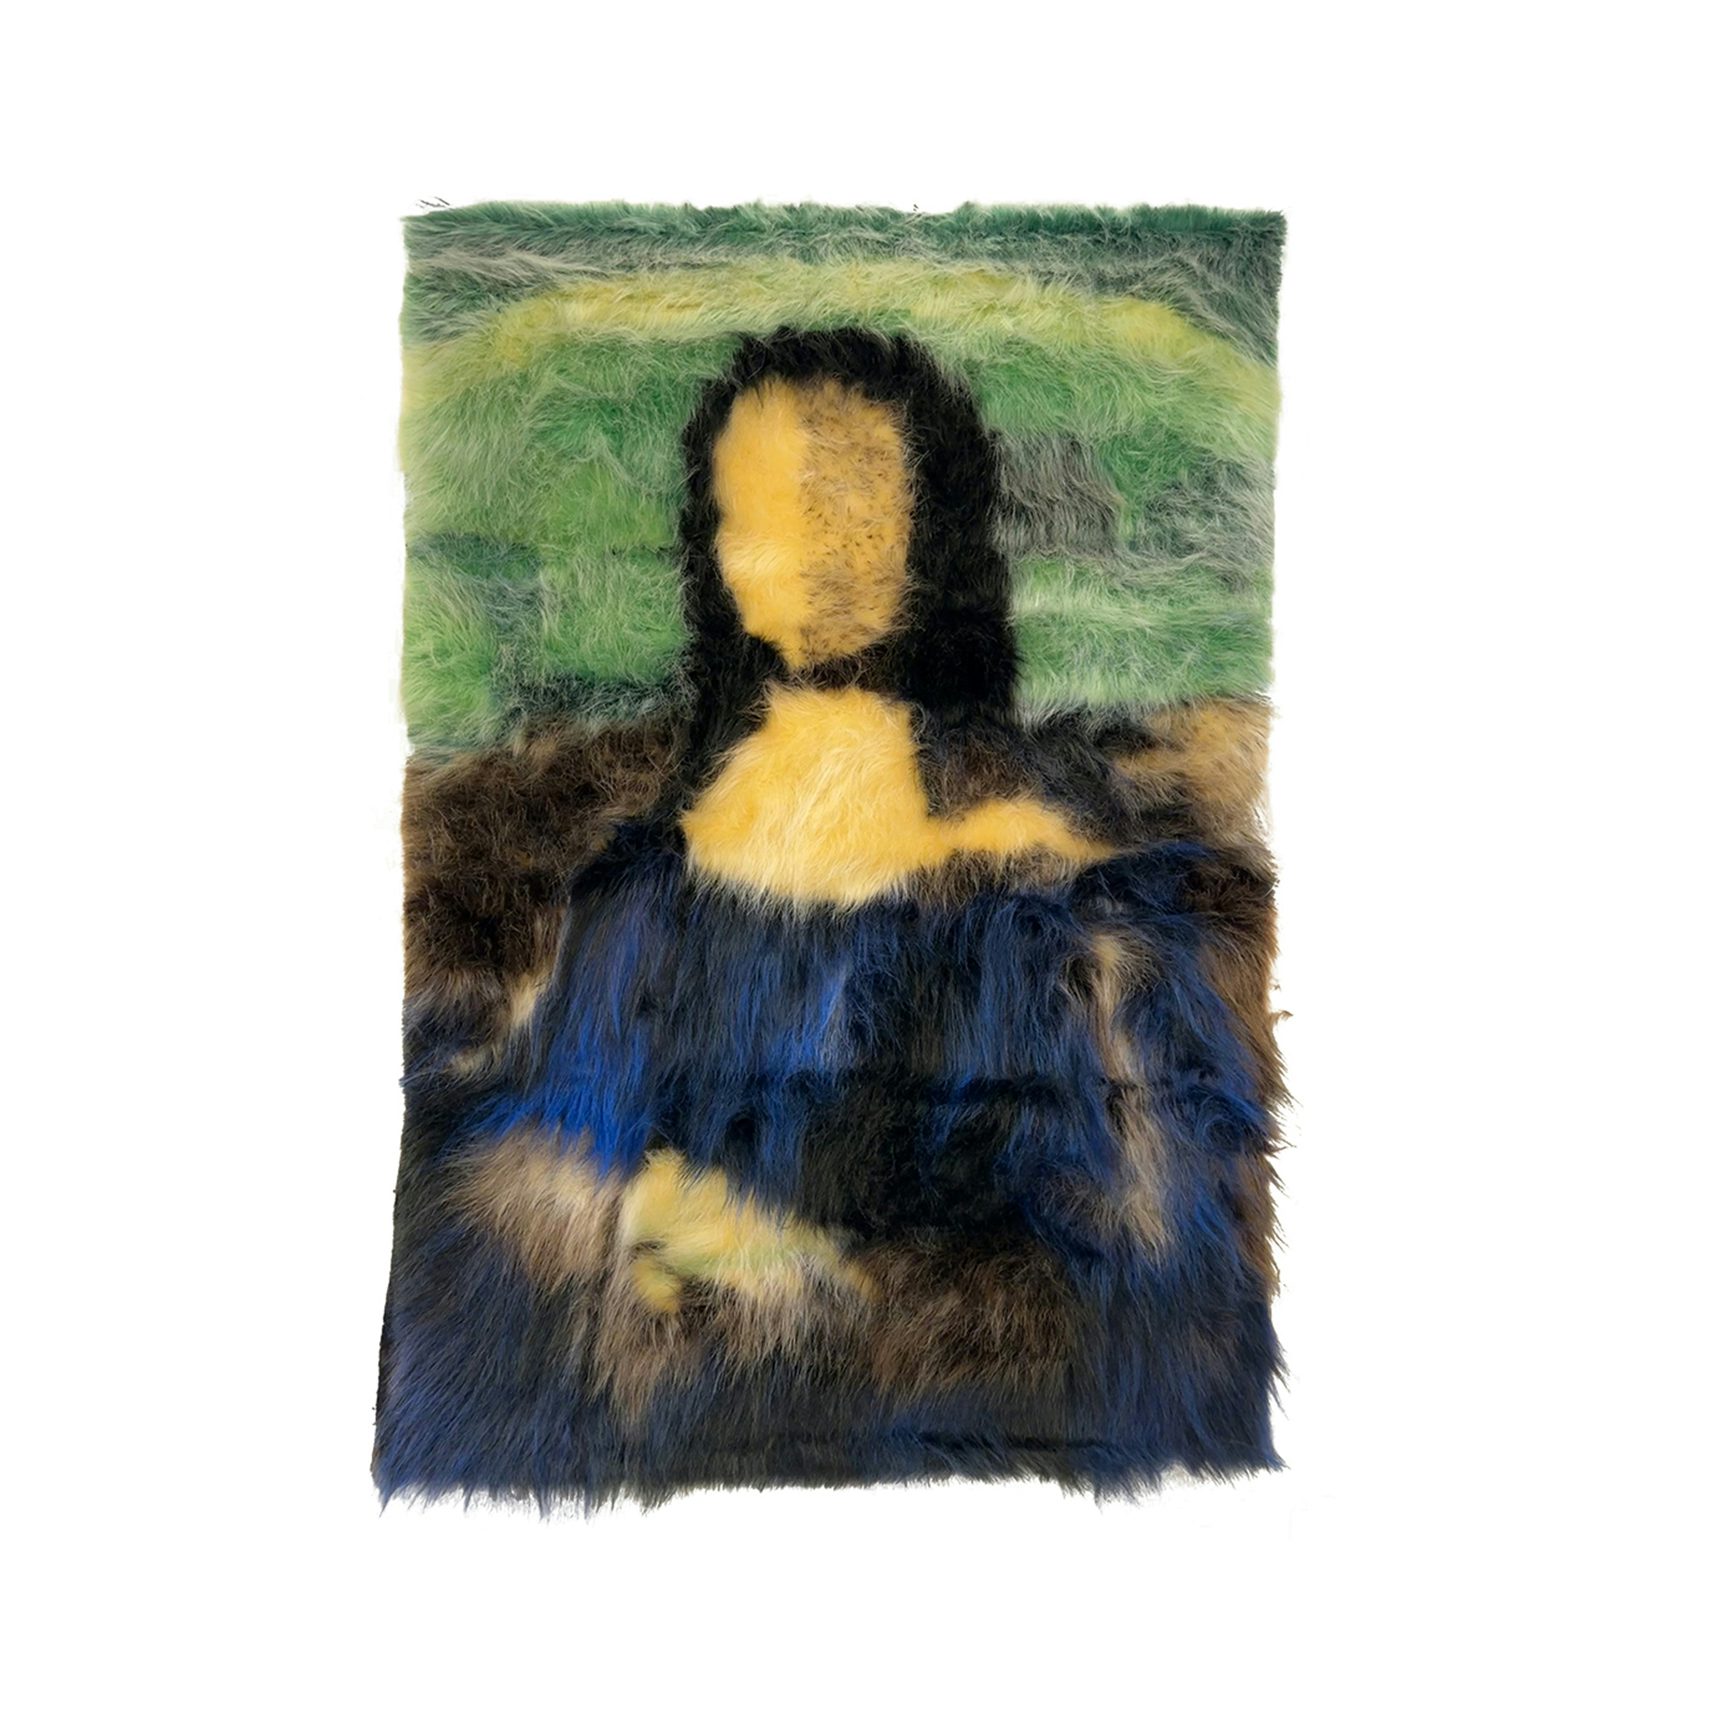 80x54 - Mona Lisa